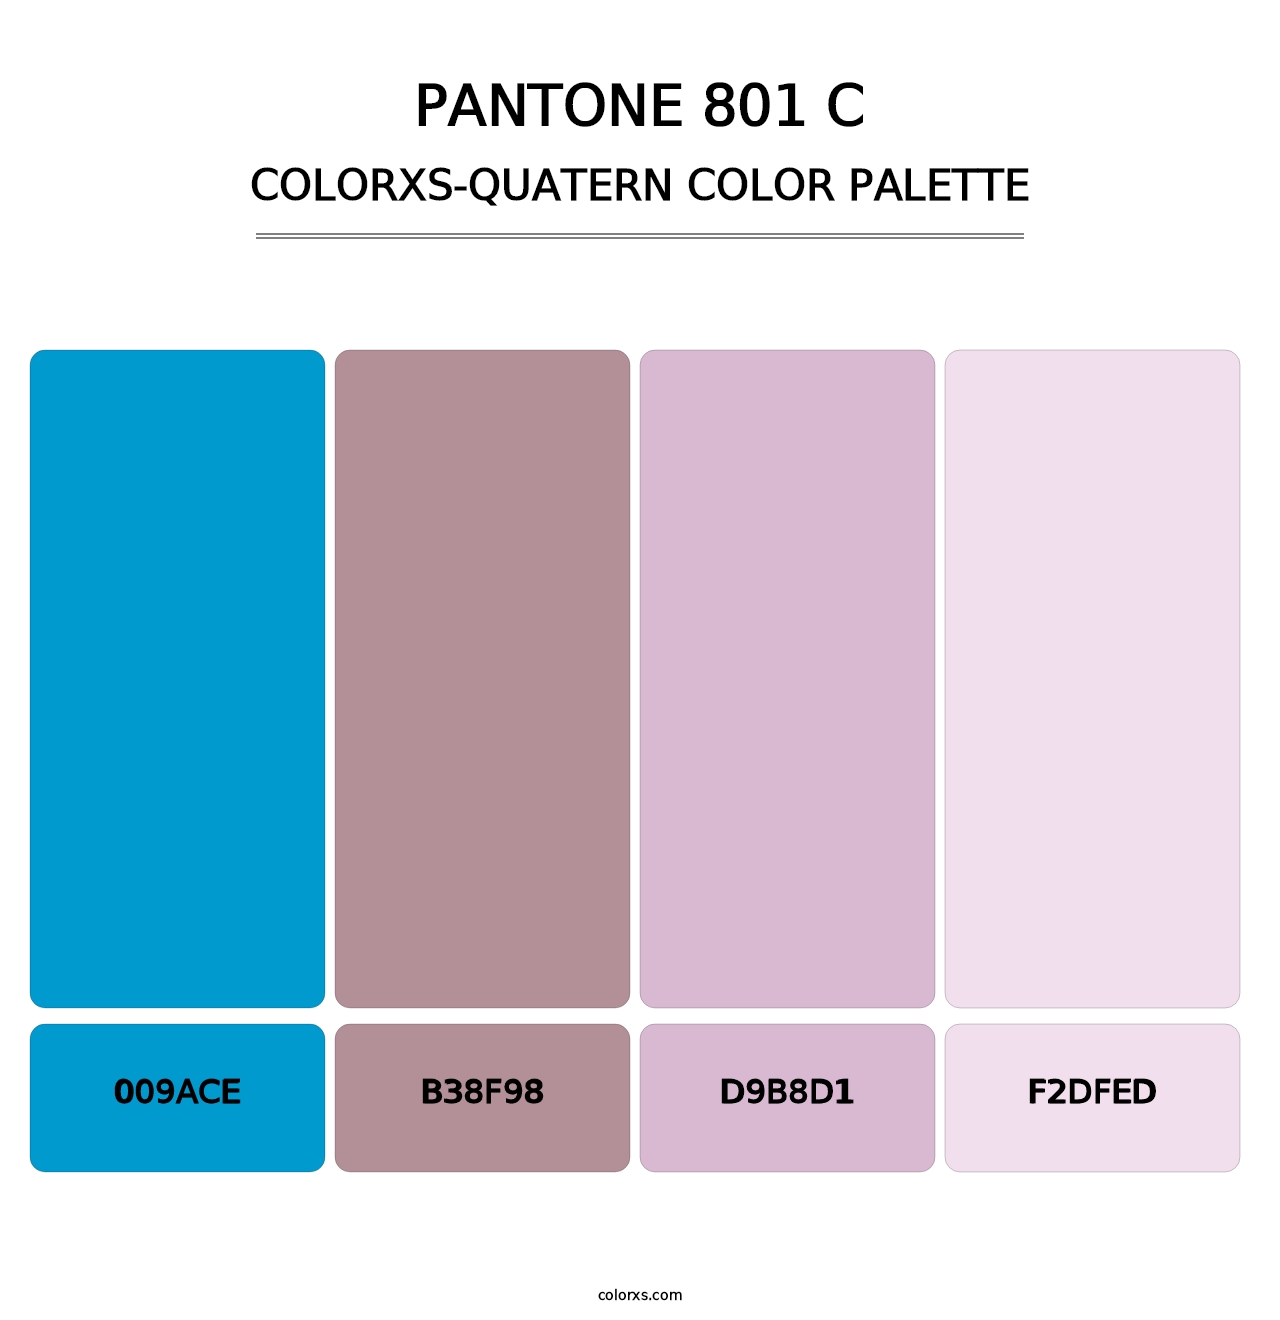 PANTONE 801 C - Colorxs Quatern Palette